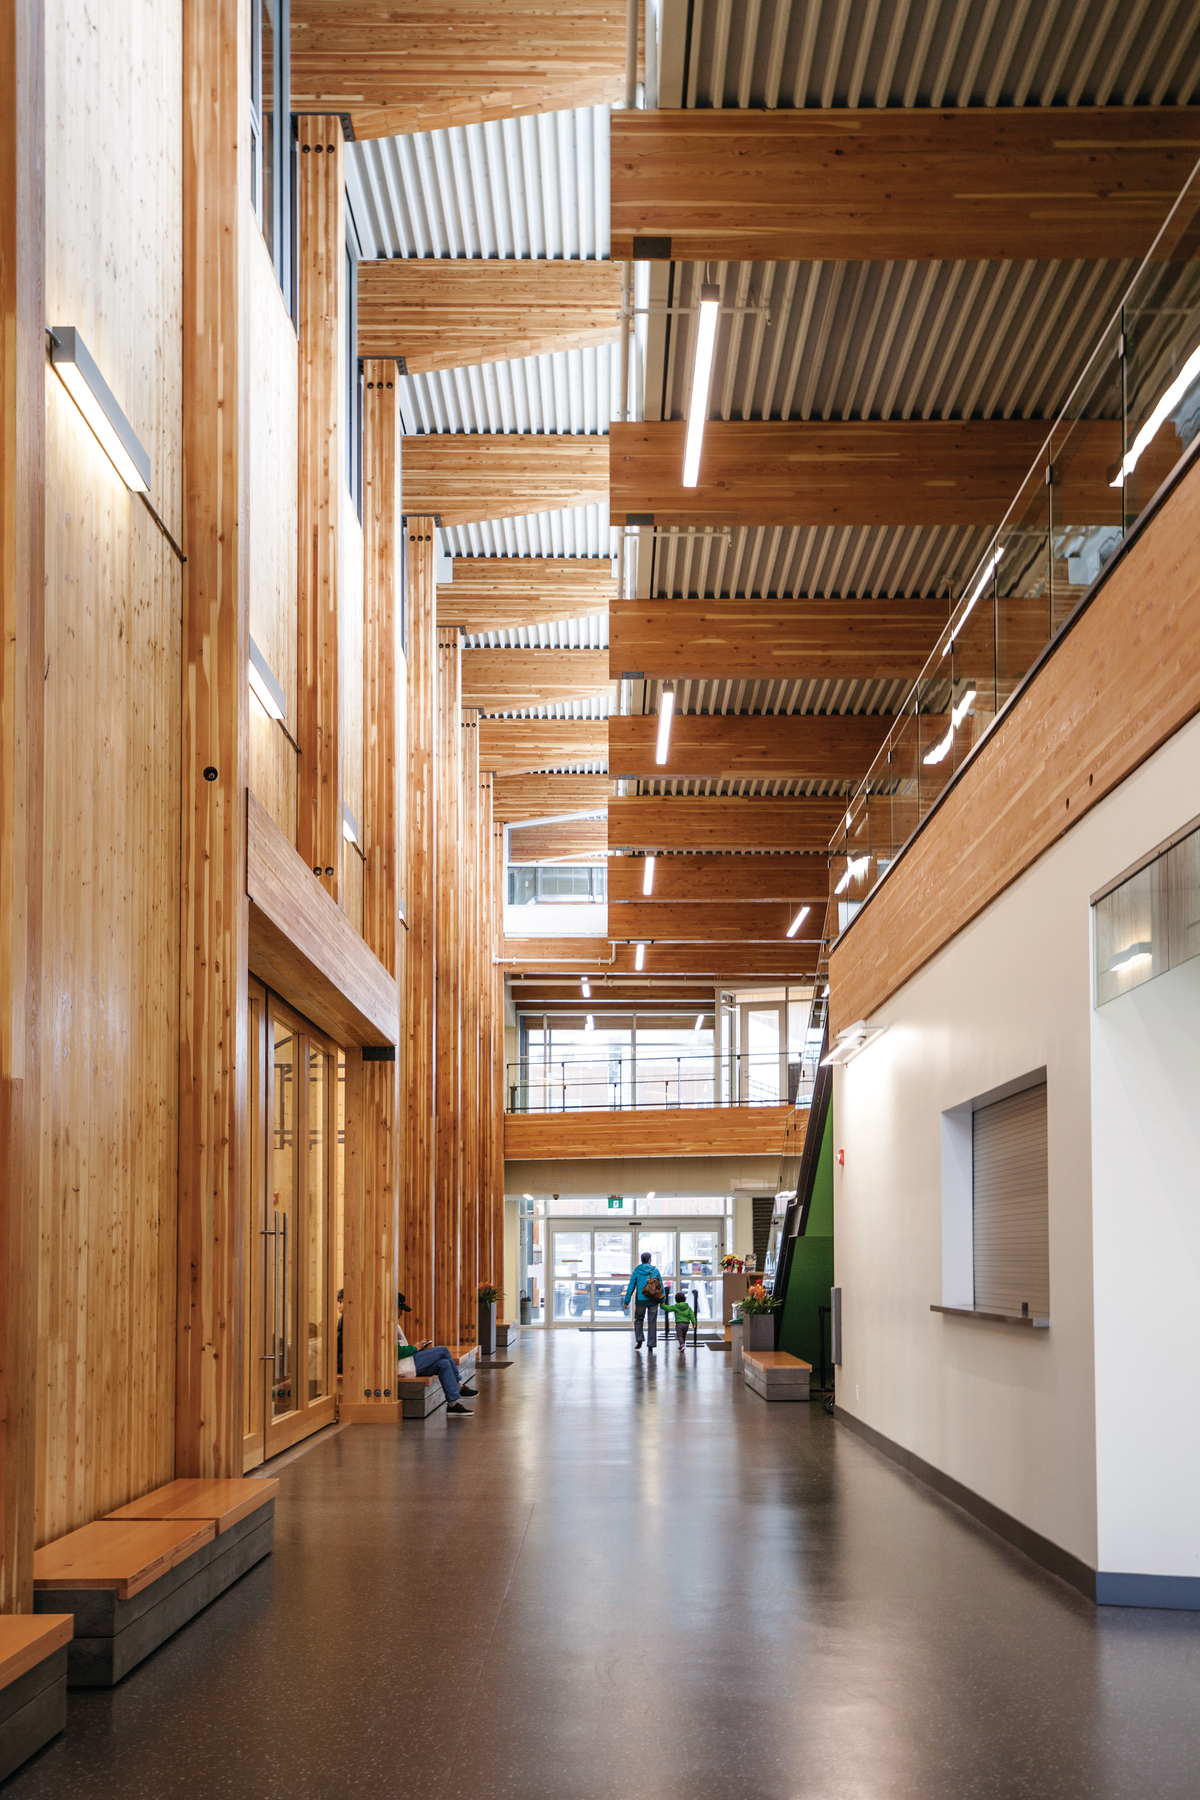 韦斯布鲁克社区中心多层低层中庭的室内白天一楼图像，显示交叉叠层木材(CLT)墙板，全跨度水平胶合木(胶合木)天花板梁，垂直柱，和广泛使用的木材装饰